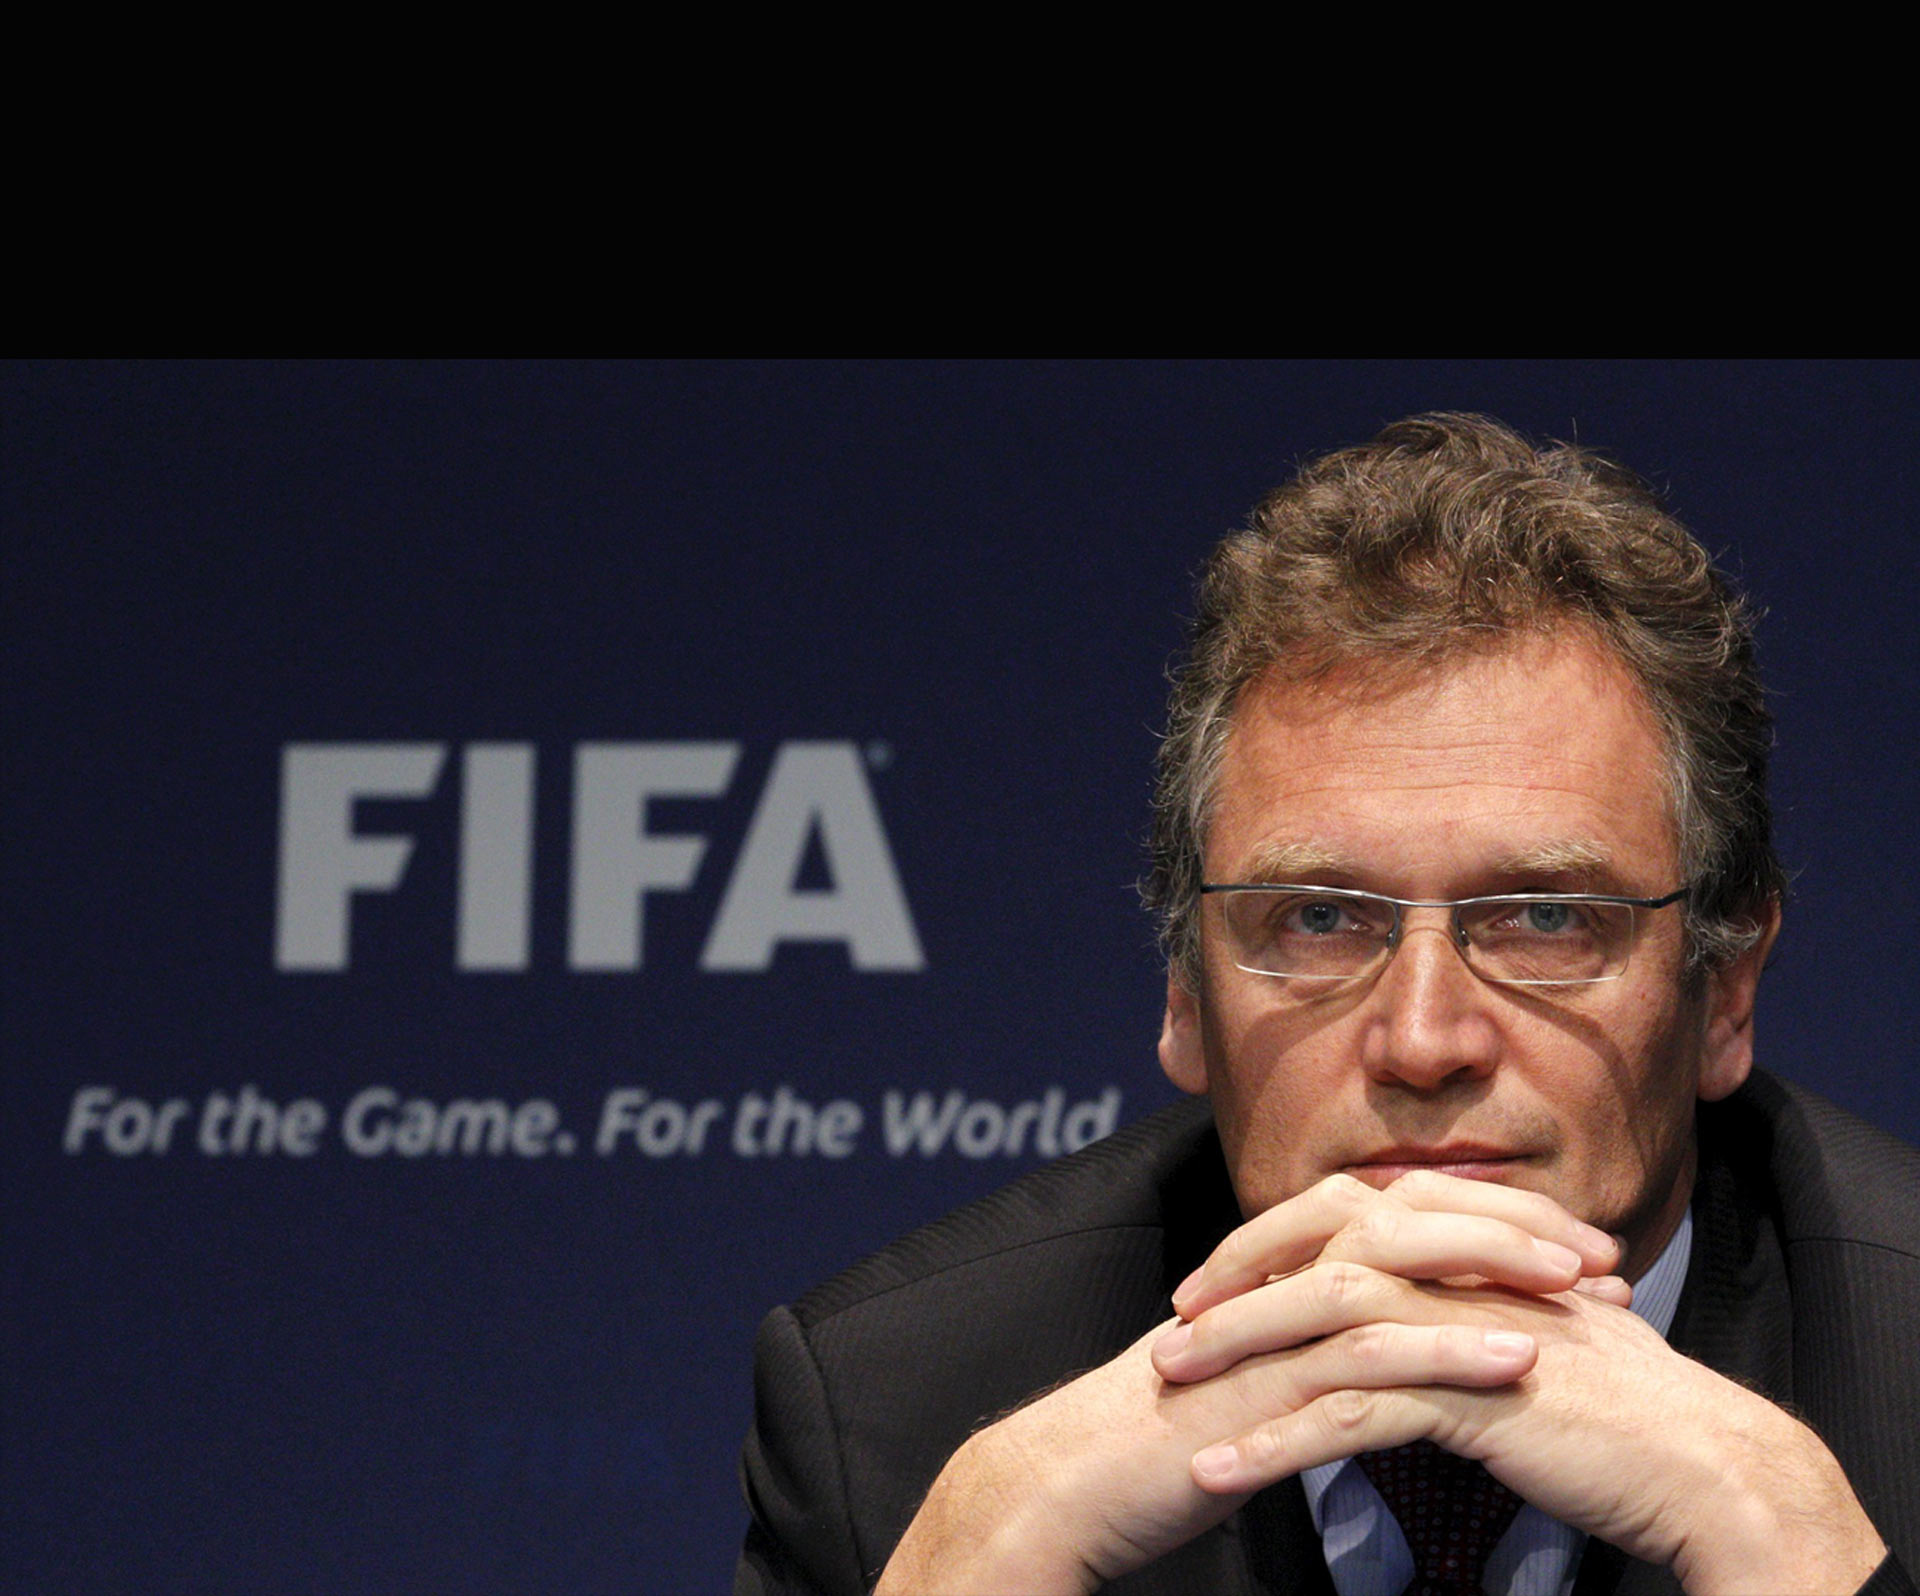 El castigo de 90 días impuesto por la FIFA el 8 de octubre, venció este martes y por ello fue renovado